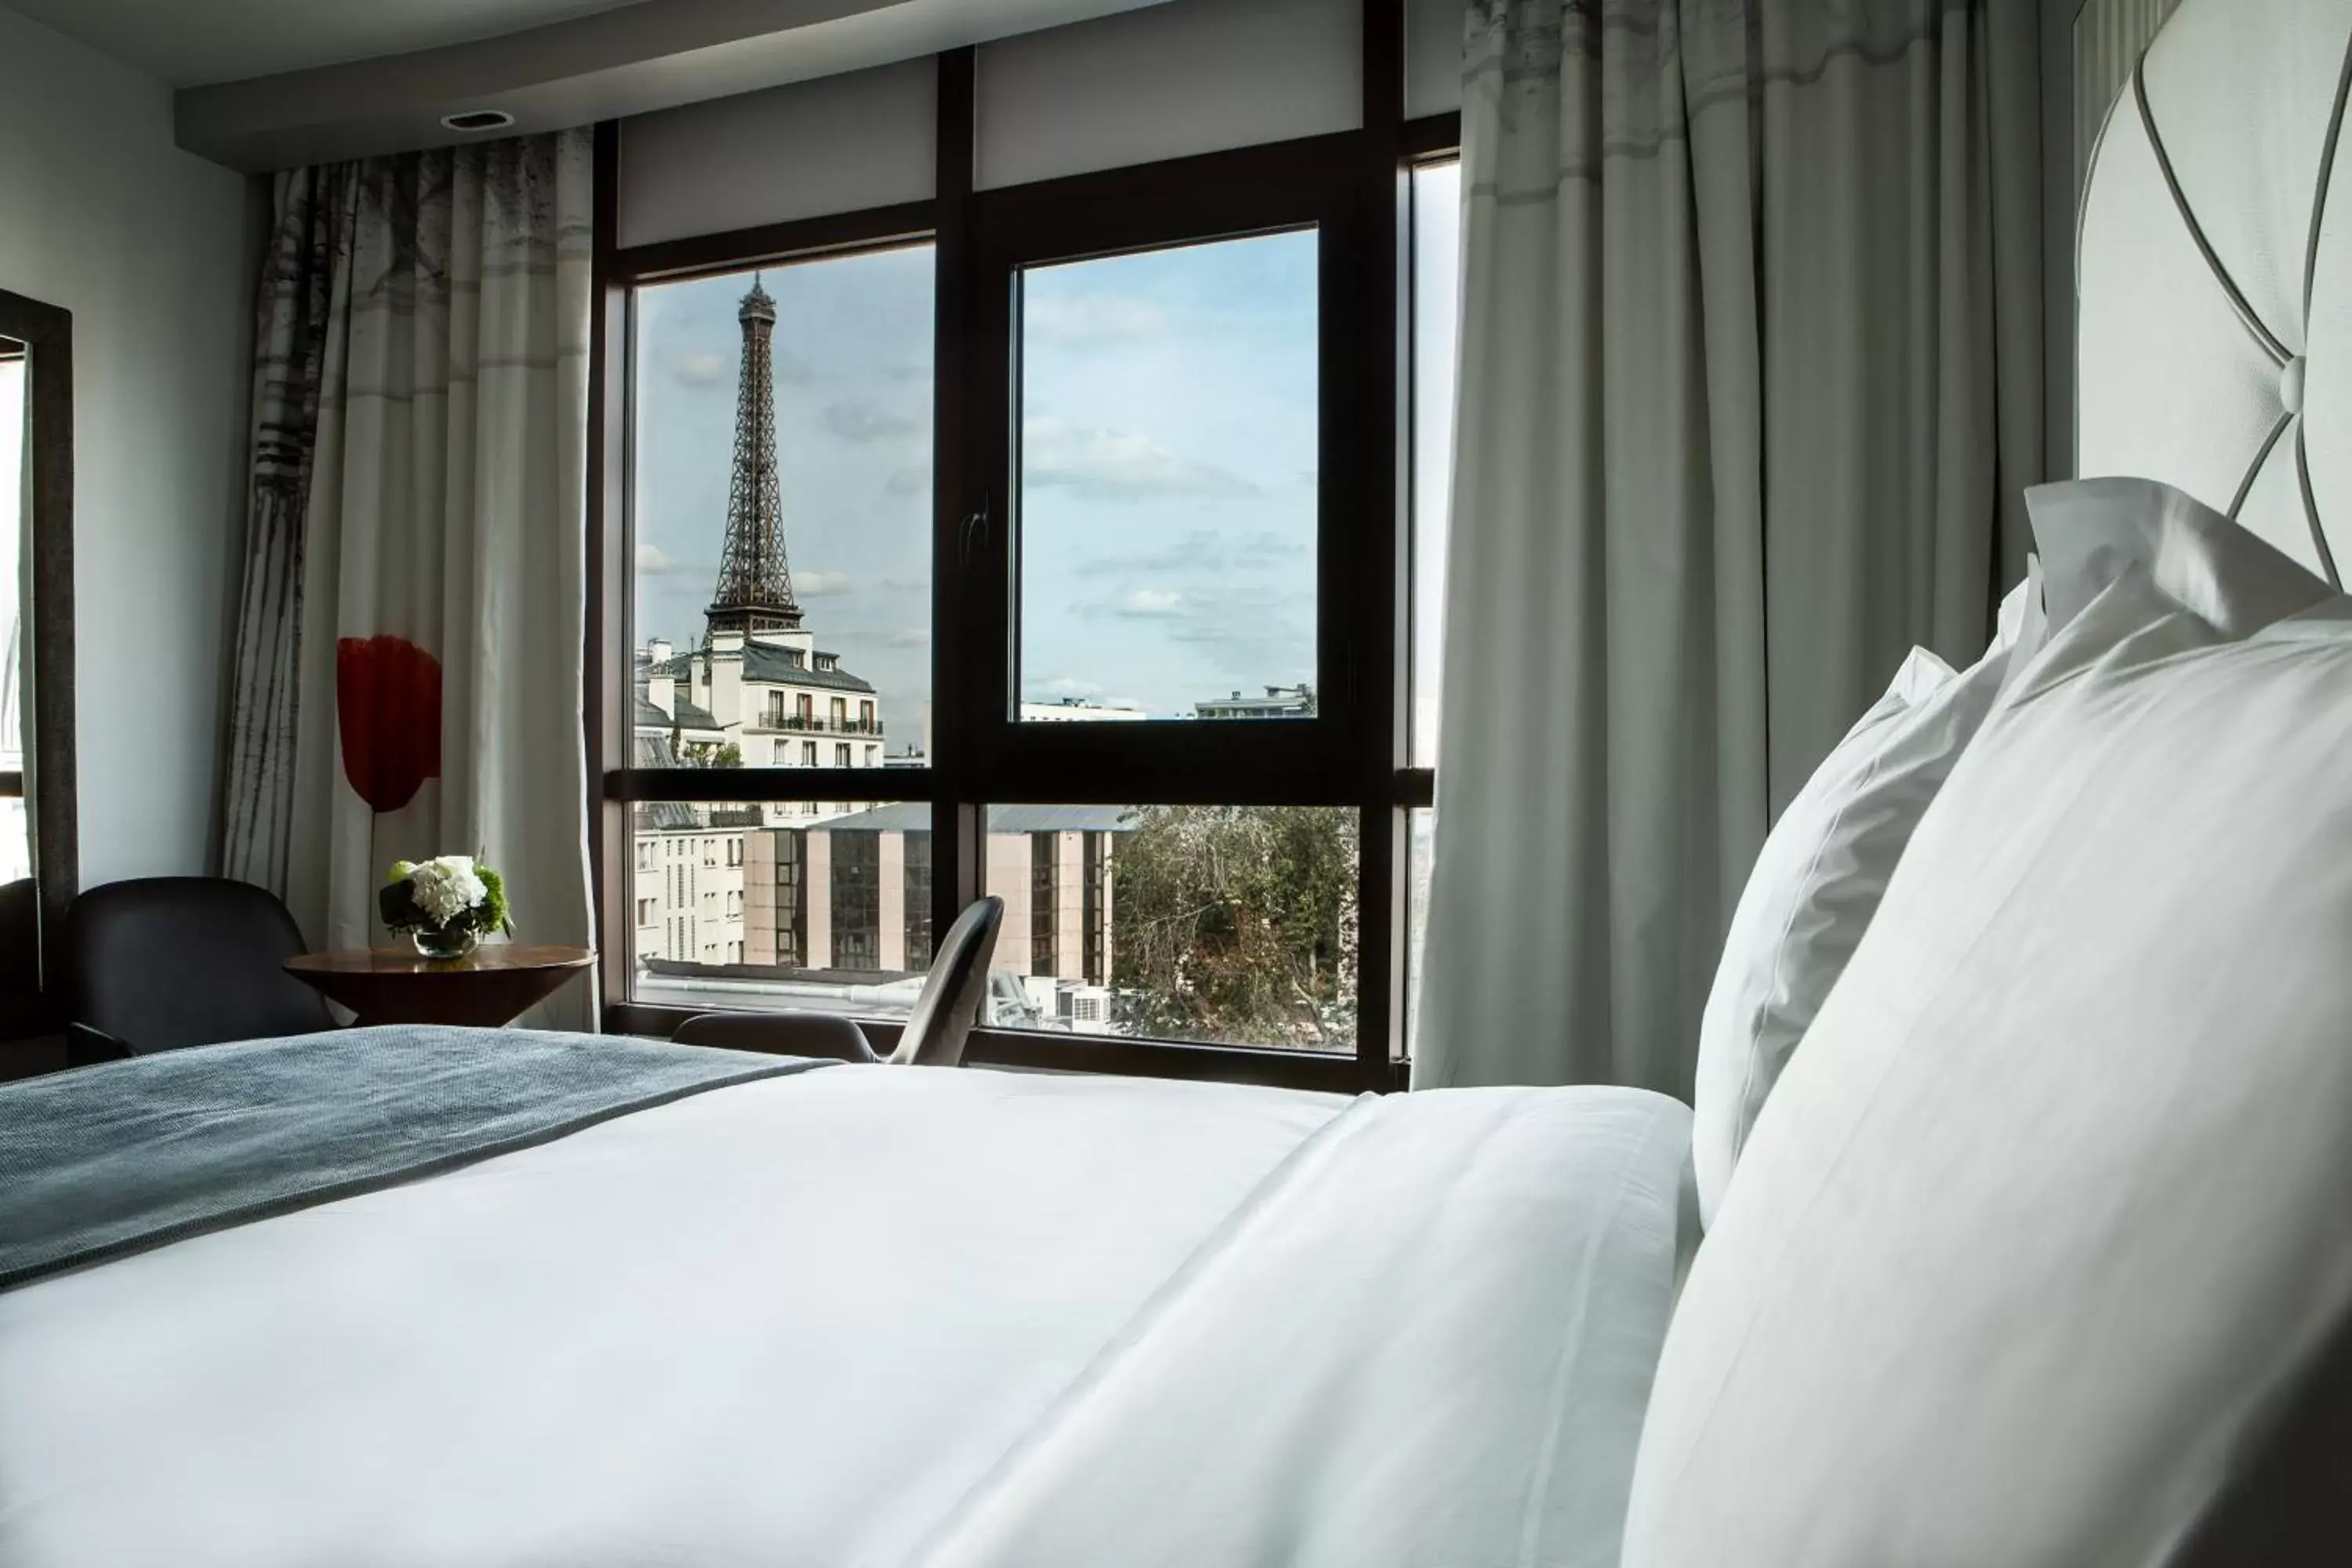 Decorative detail, Bed in Le Parisis - Paris Tour Eiffel